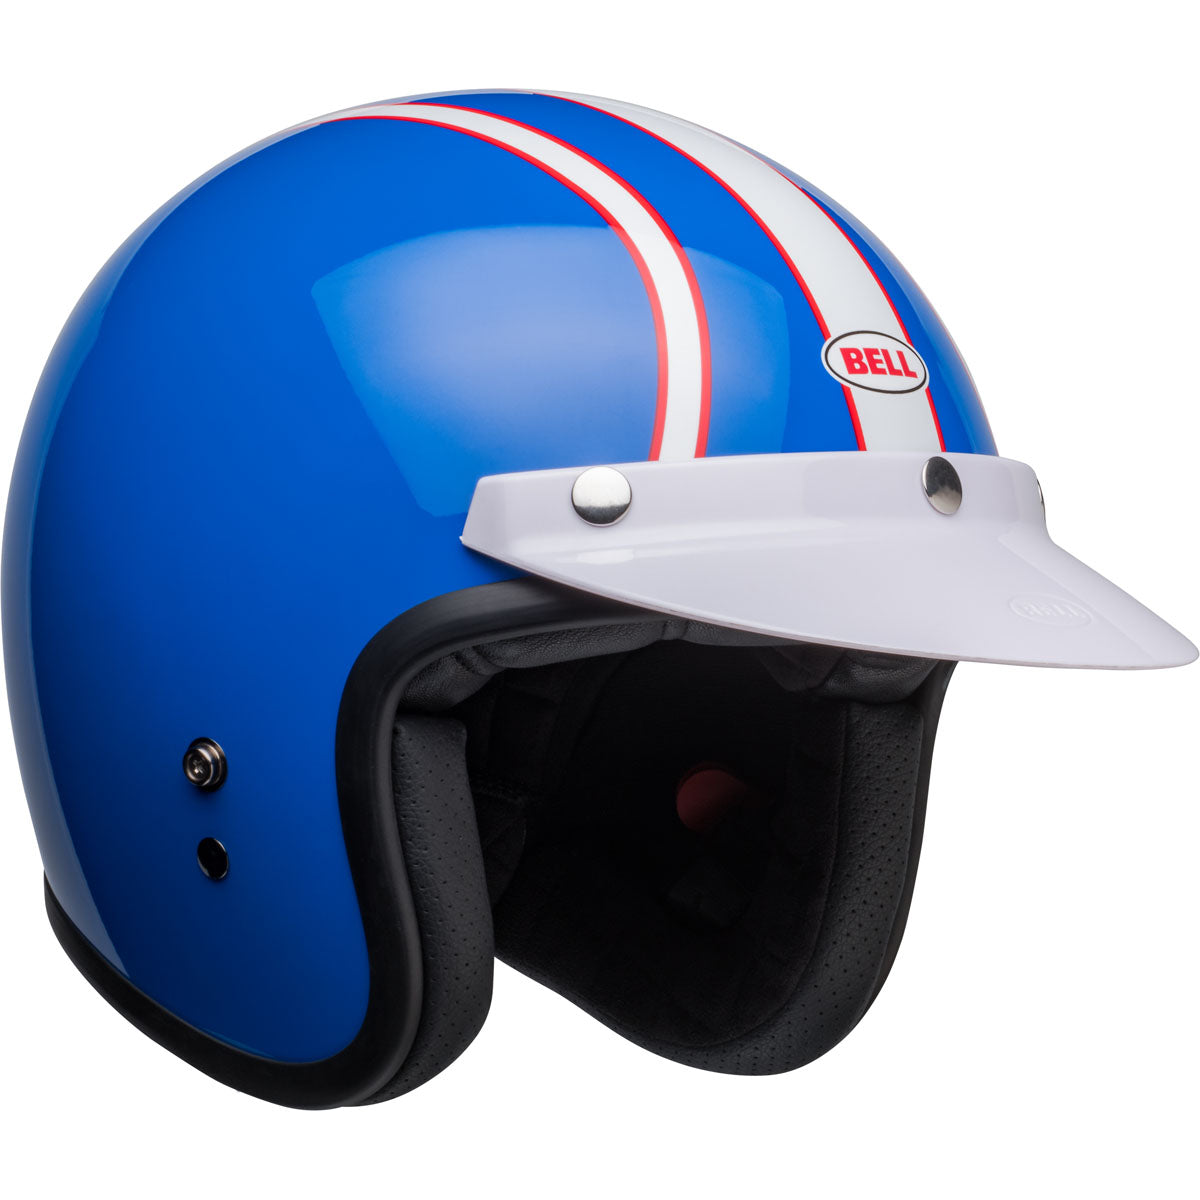 Bell Custom 500 Six Day Steve McQueen Helmet - Blue/White